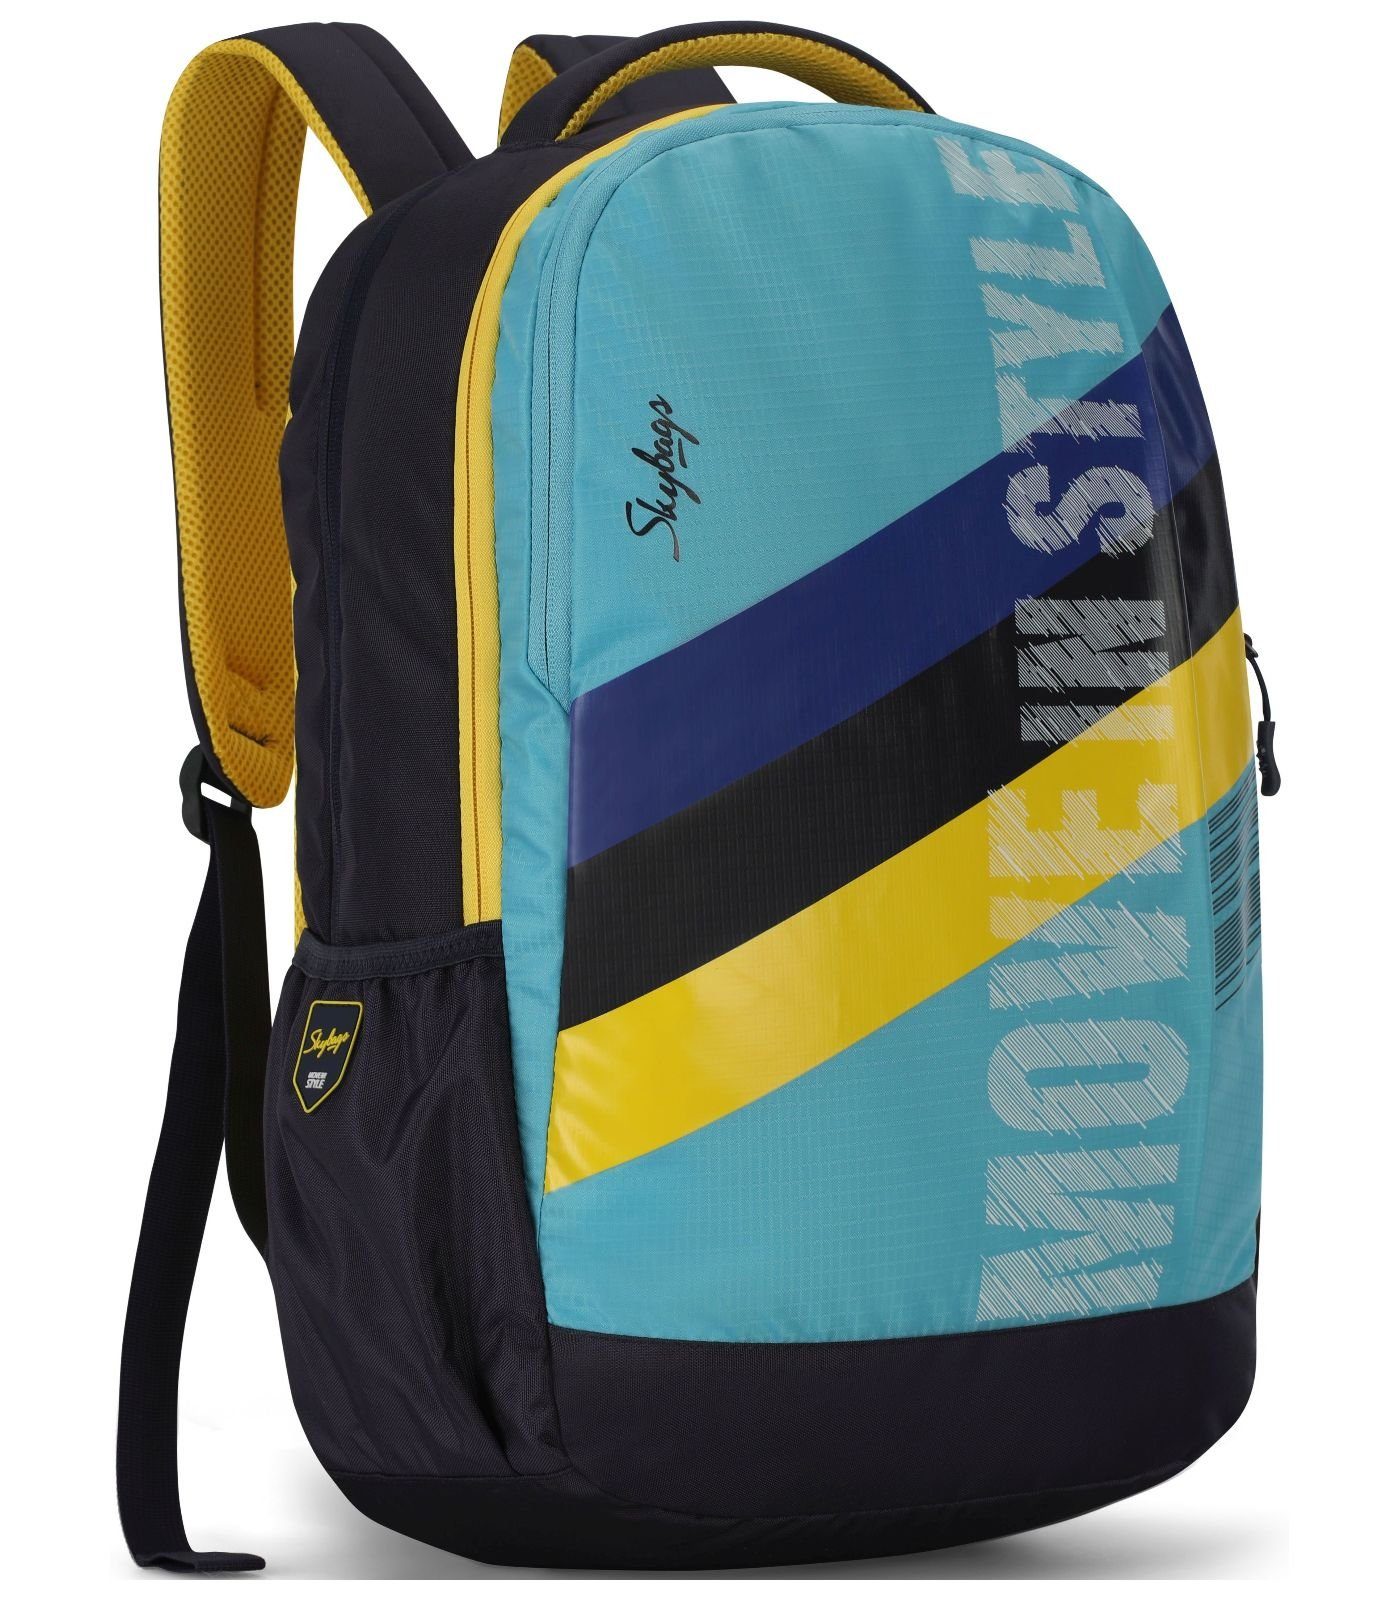 Textil Taschen Rucksack Skybags